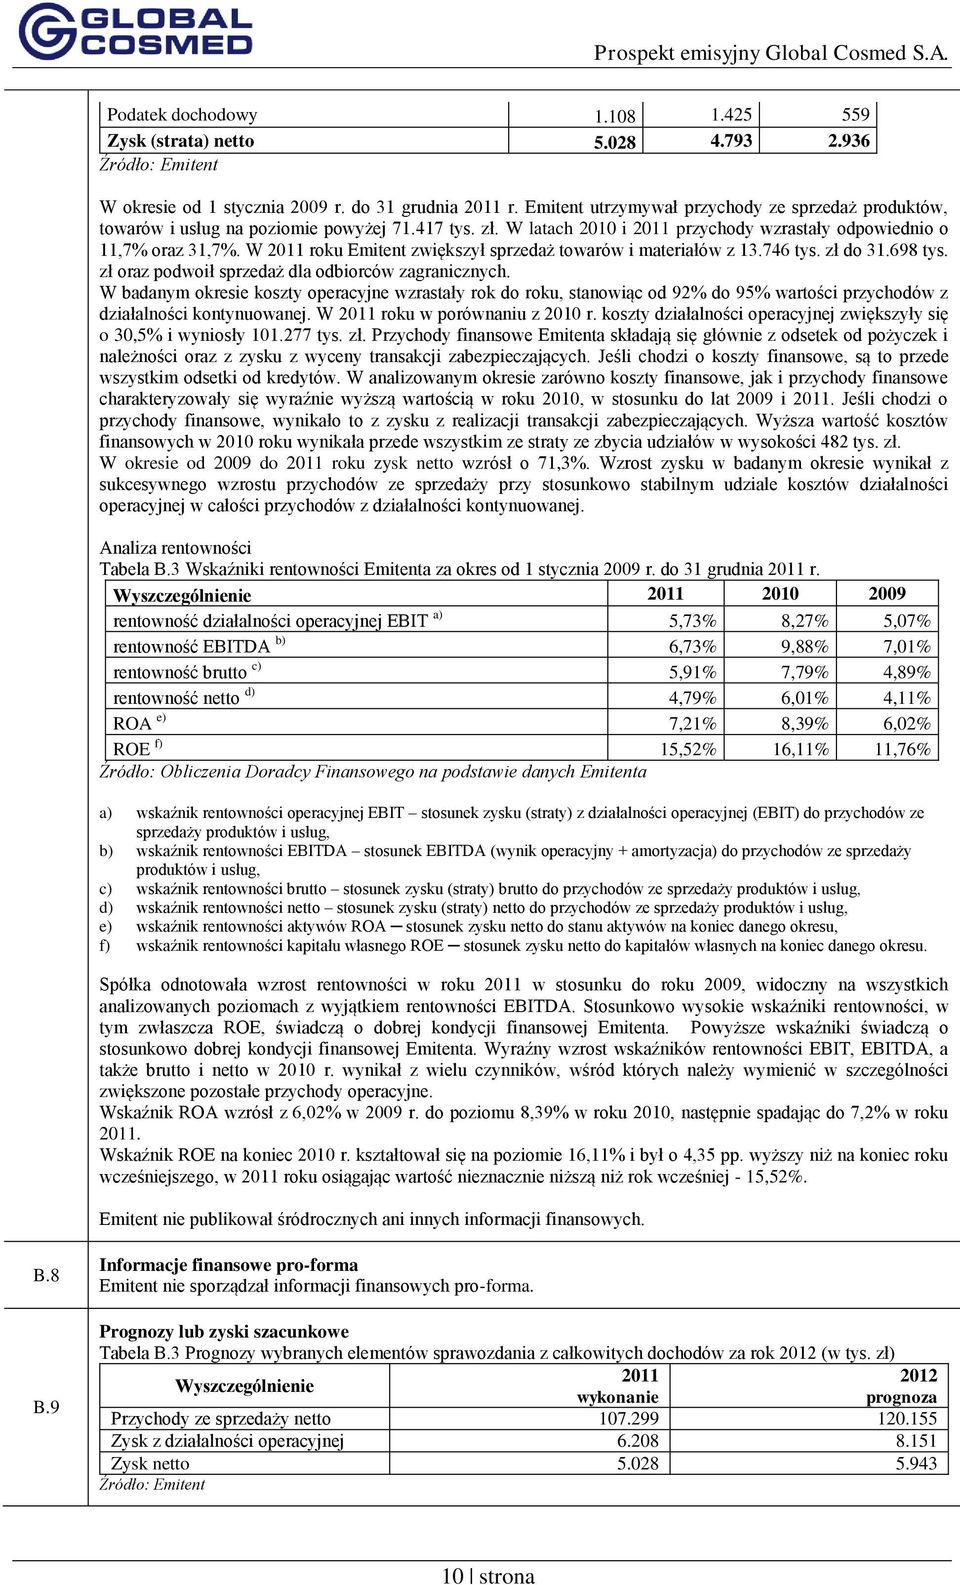 W 2011 roku Emitent zwiększył sprzedaż towarów i materiałów z 13.746 tys. zł do 31.698 tys. zł oraz podwoił sprzedaż dla odbiorców zagranicznych.